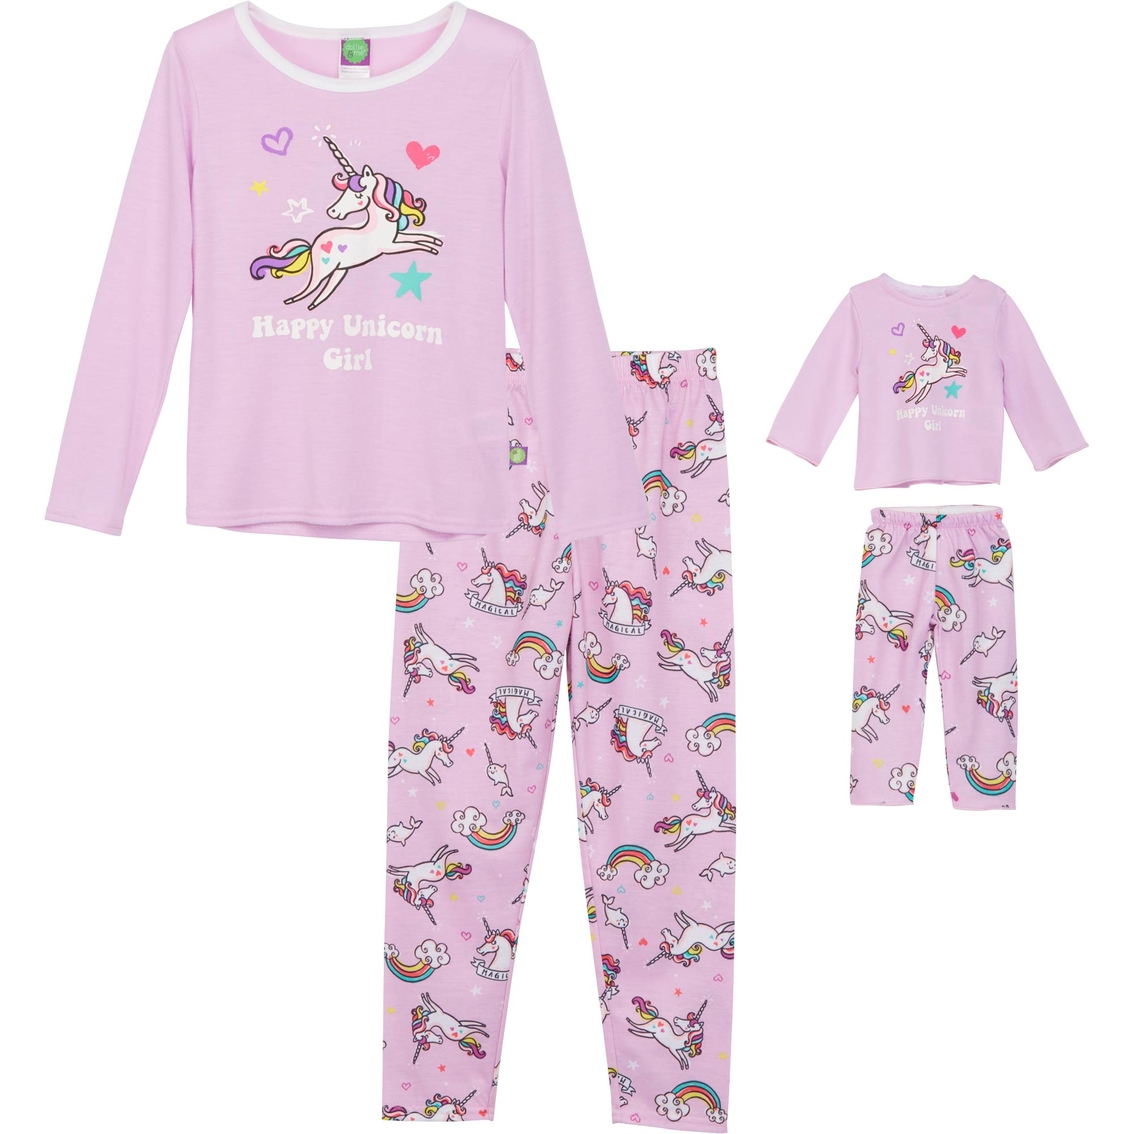 Dollie And Me Girls Unicorn 2 Pc. Pajama Set | Girls 7-16 | Clothing ...